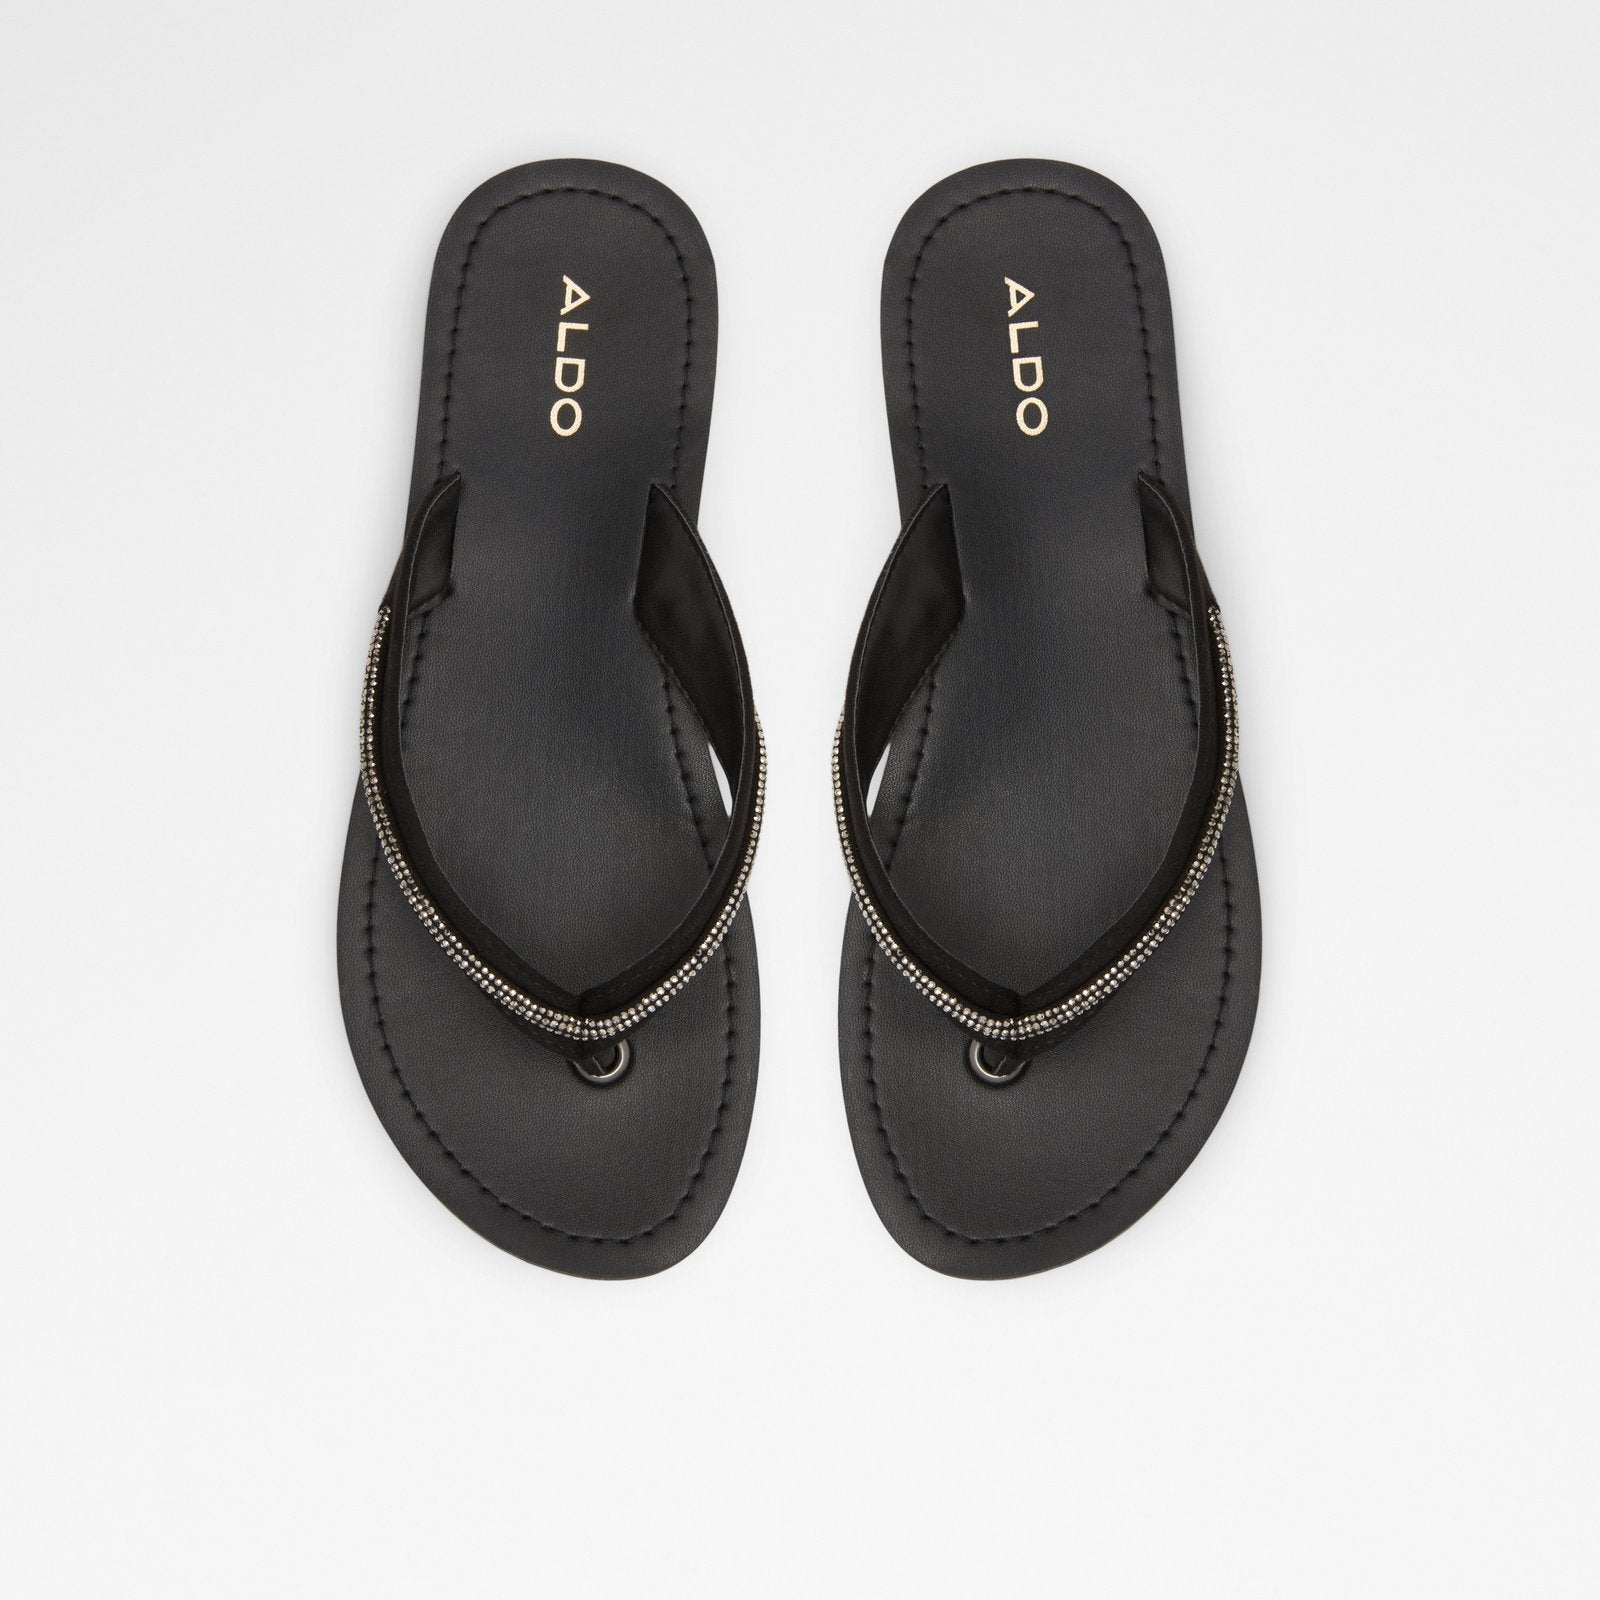 Polo Women Shoes - Black - ALDO KSA